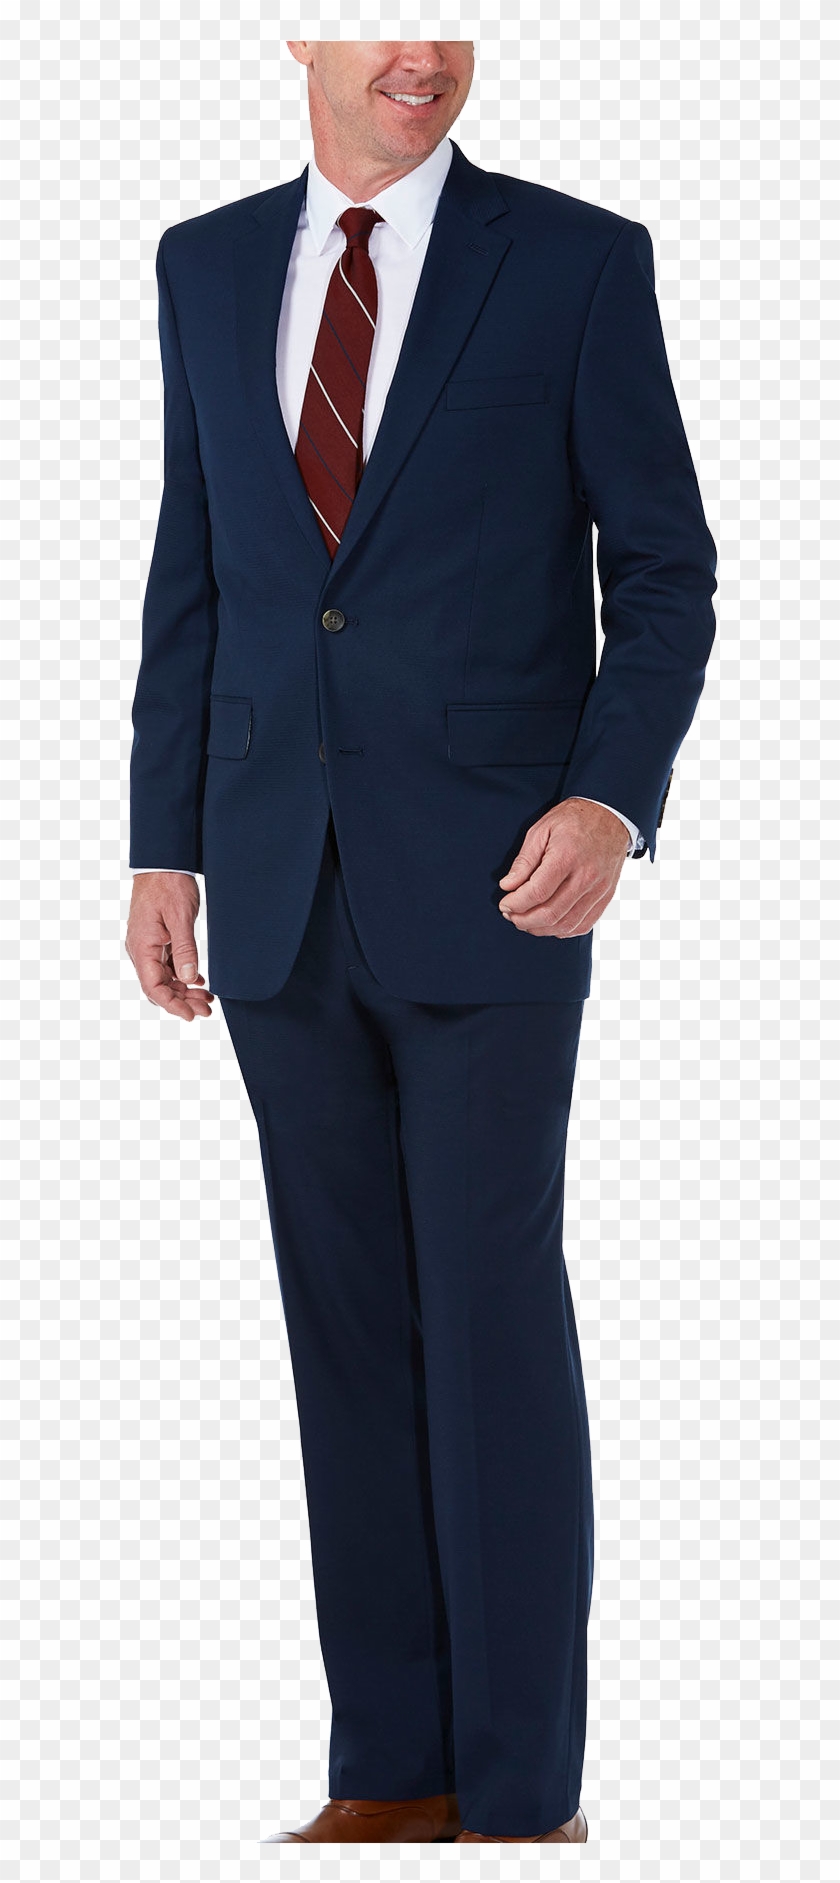 Haggar Premium Classic Fit Blue Suit - Haggar Blue Suit Clipart #3191331